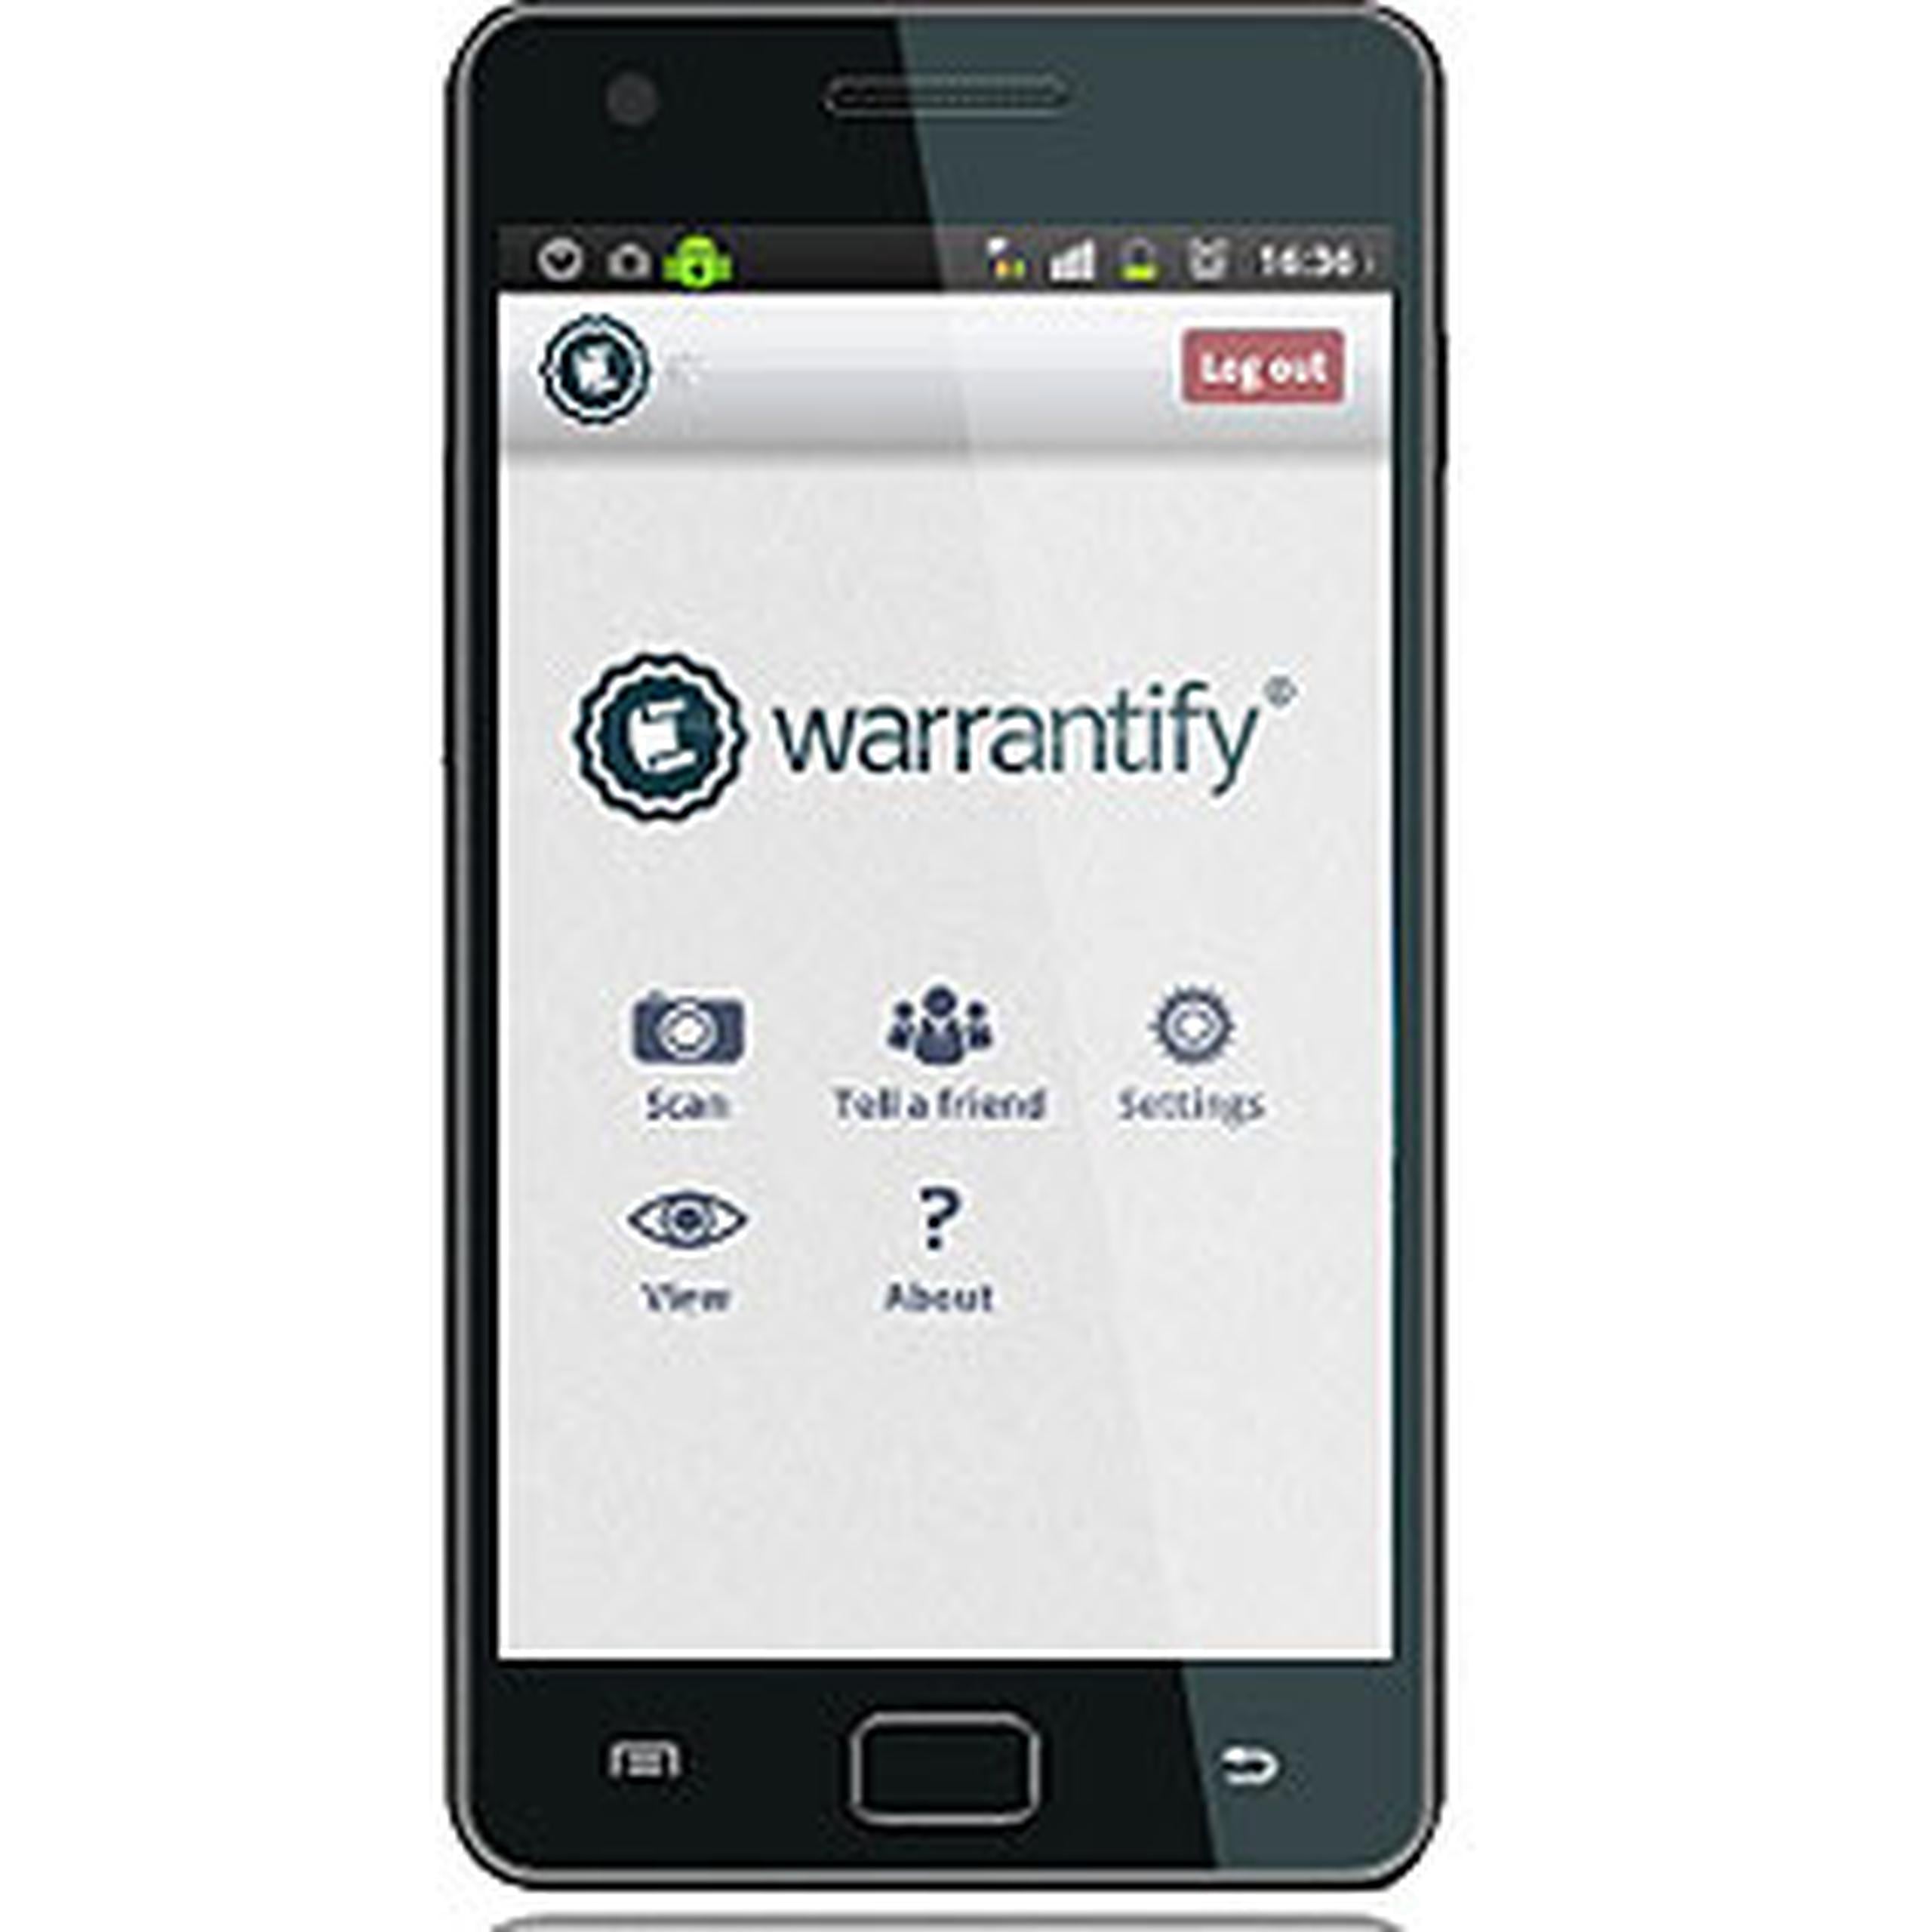 Warrantify permite al usuario entrar información relacionada a la compra. (Suministrada)